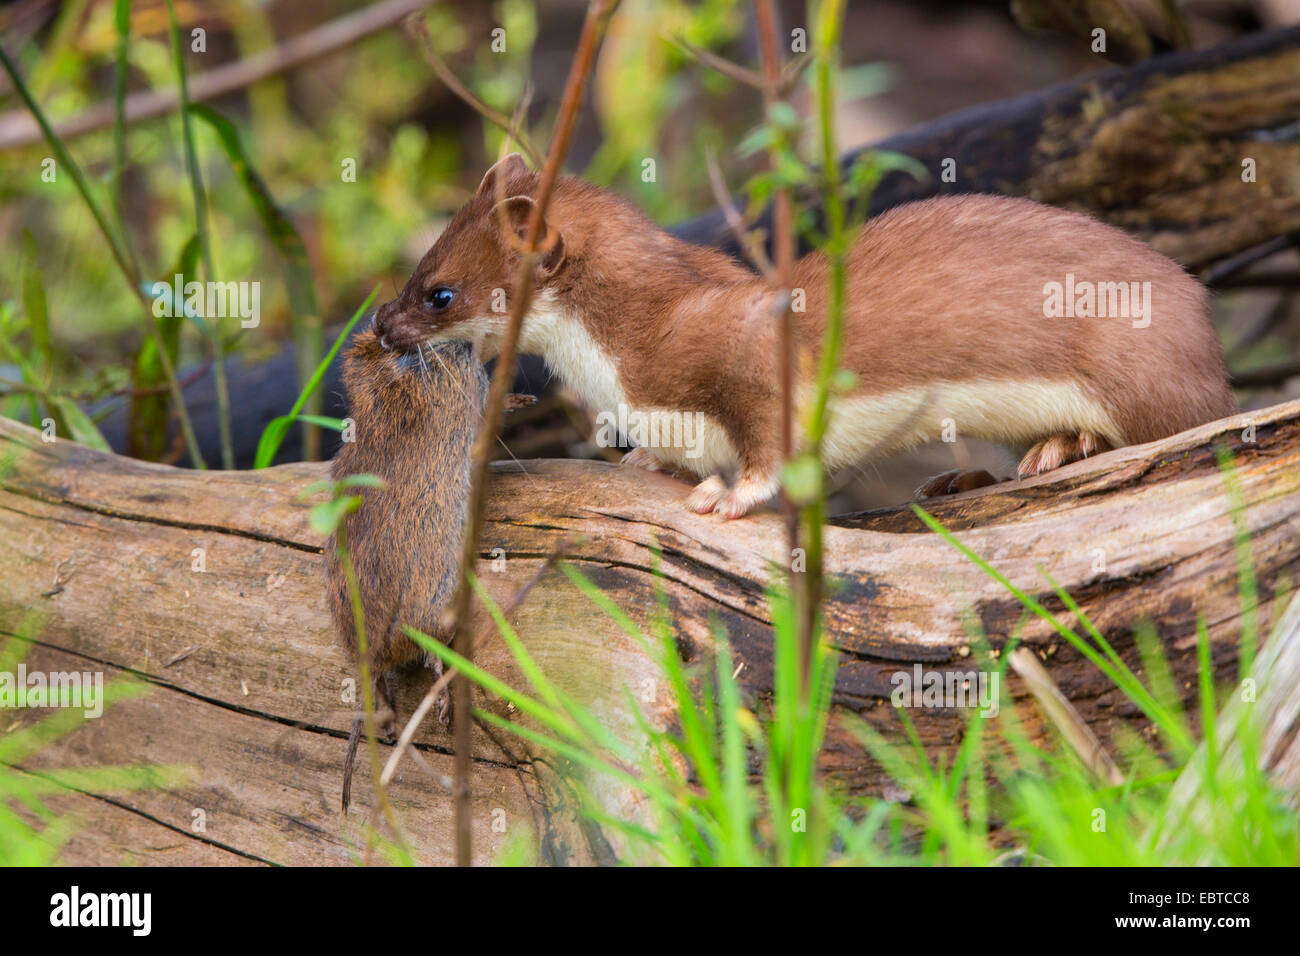 Ermellino, ermellino, corto-tailed donnola (Mustela erminea), Sommer pelliccia catturati con mouse, in Germania, in Baviera Foto Stock